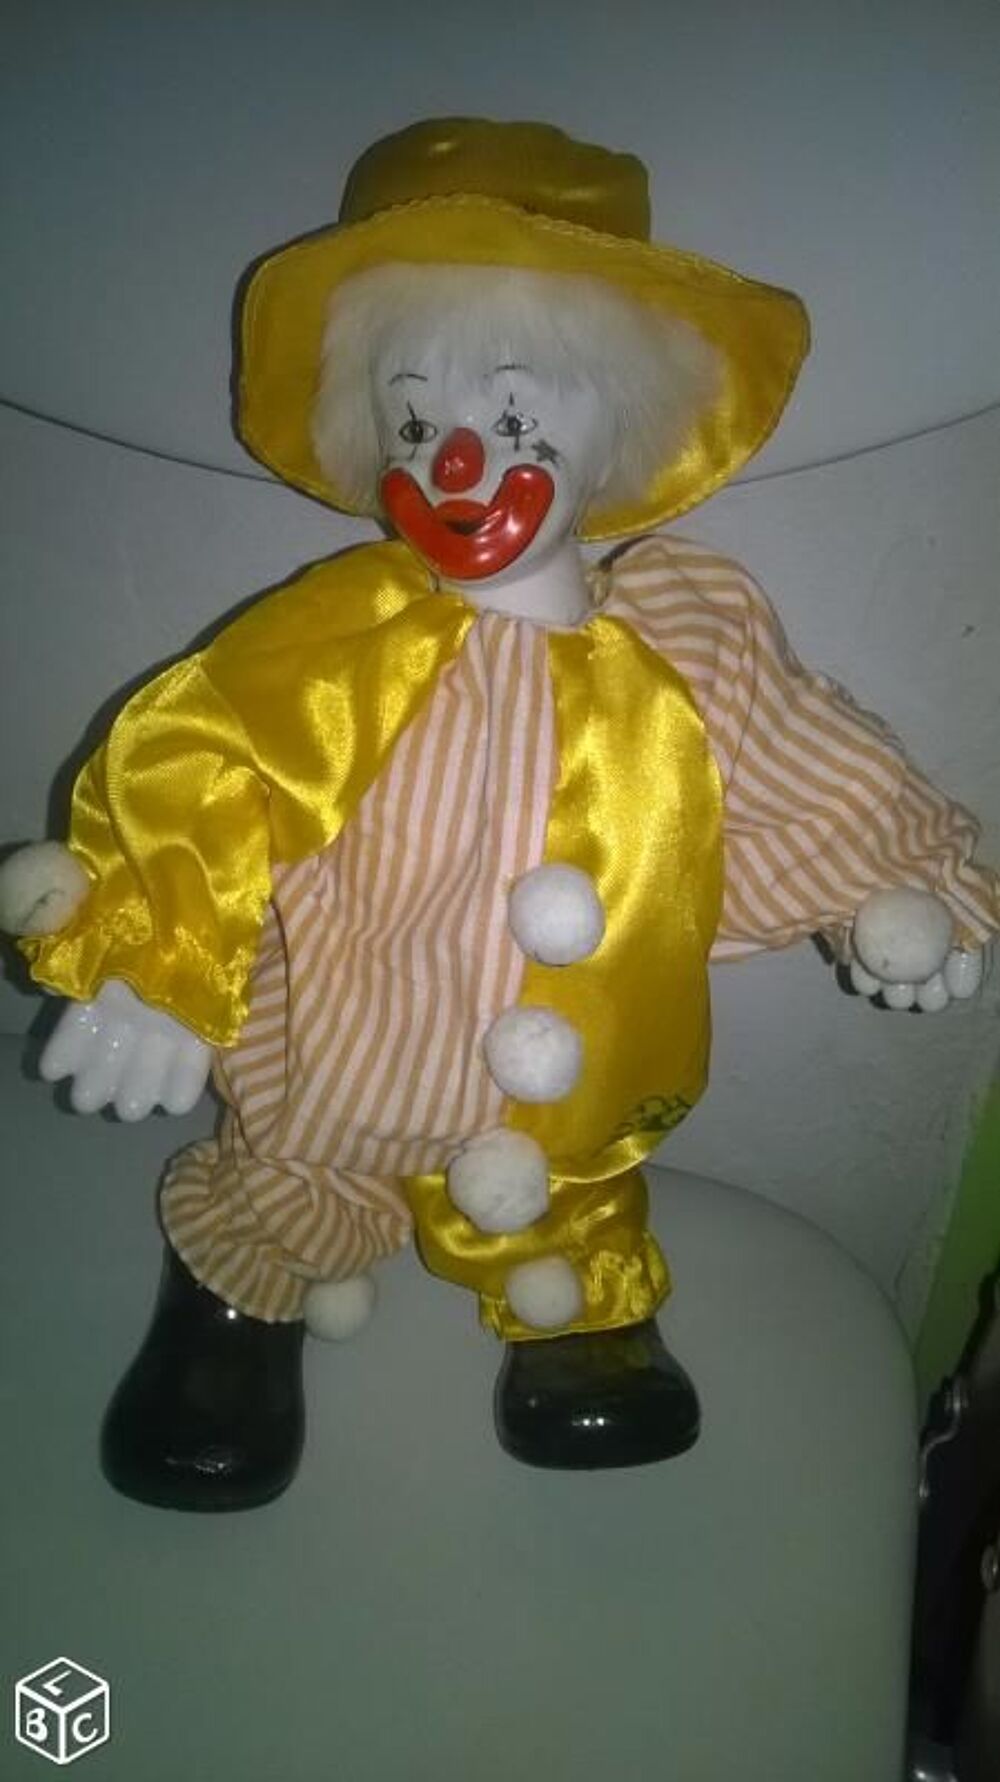 Clown jaune
Pieds et main en porcelaine articule
Tres bell 